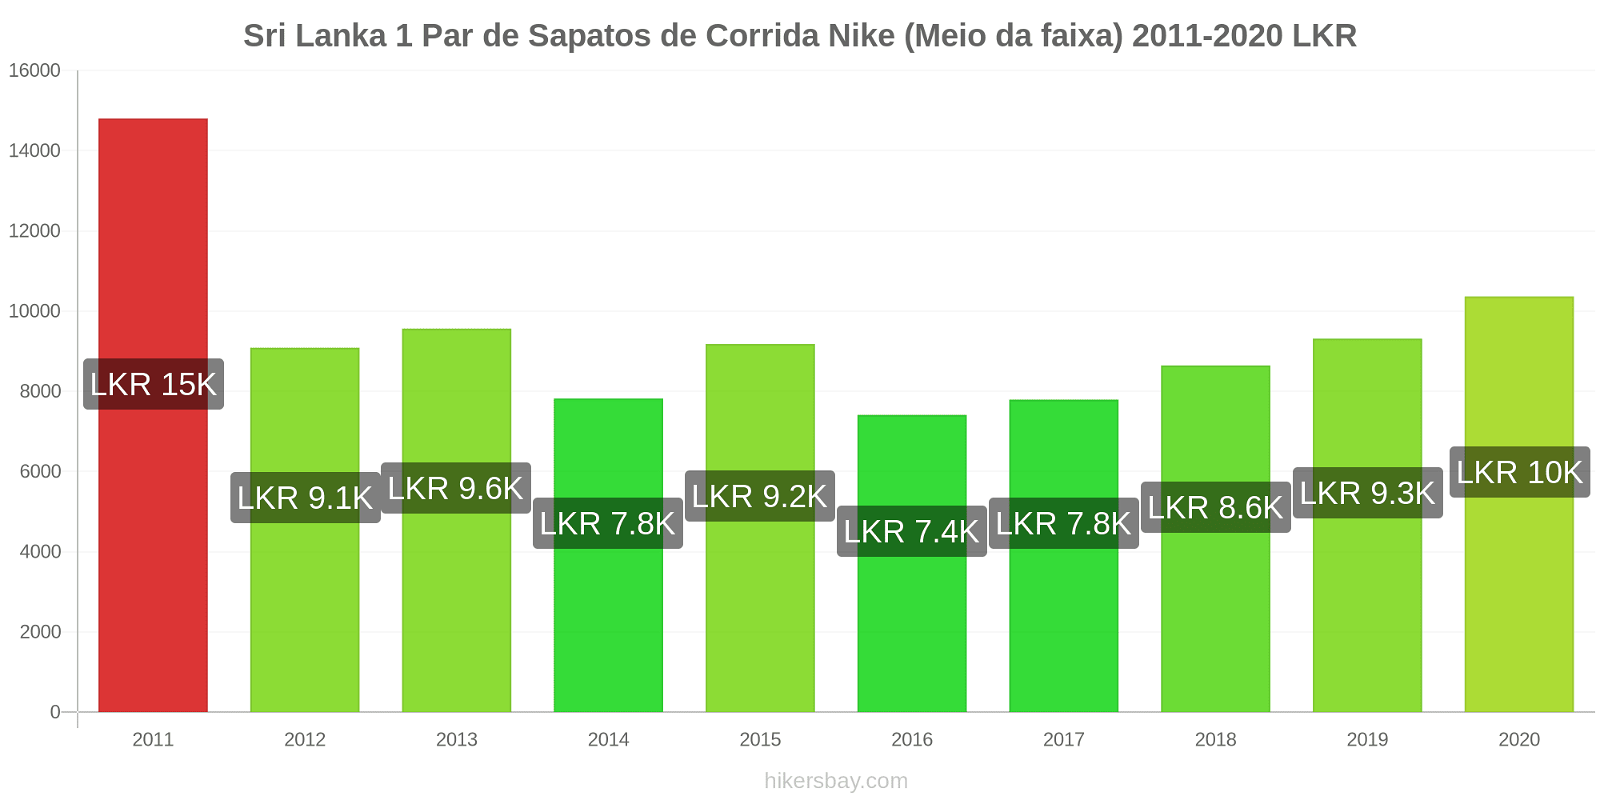 Sri Lanka variação de preço 1 par de tênis Nike (mid-range) hikersbay.com